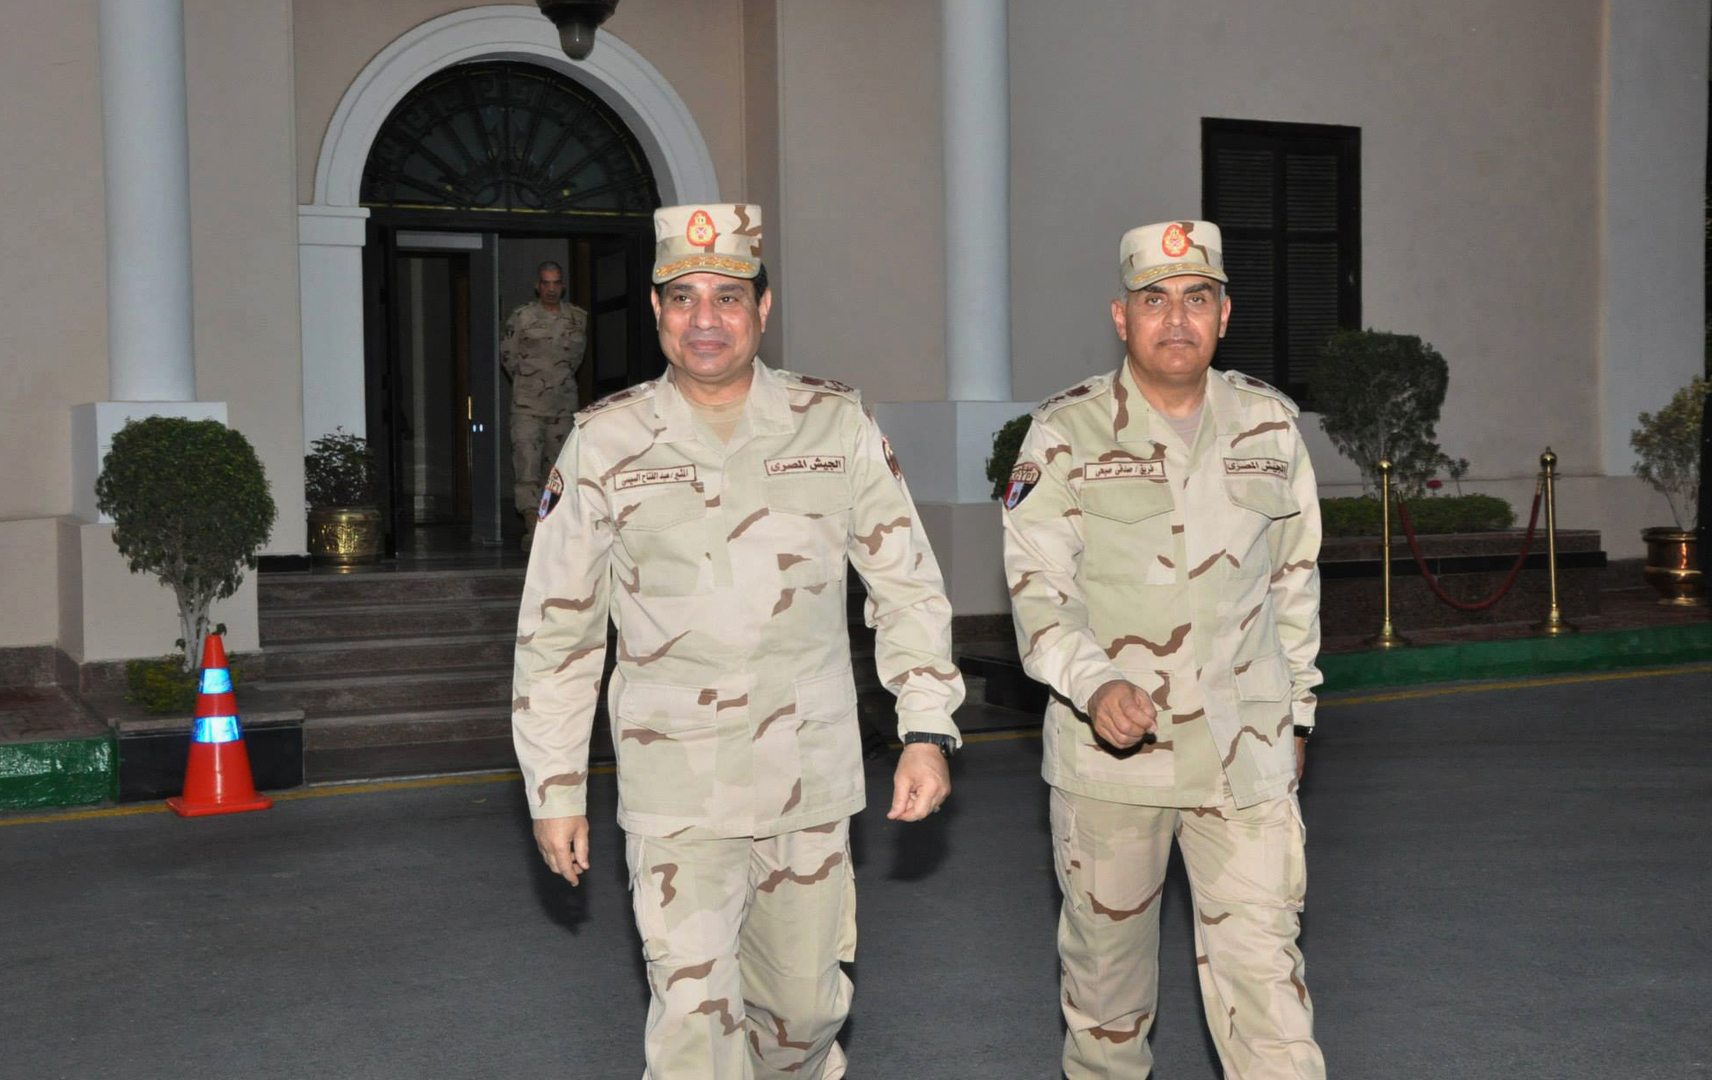 السيسي يصدر توجيهات للجيش المصري بشأن الأسلحة